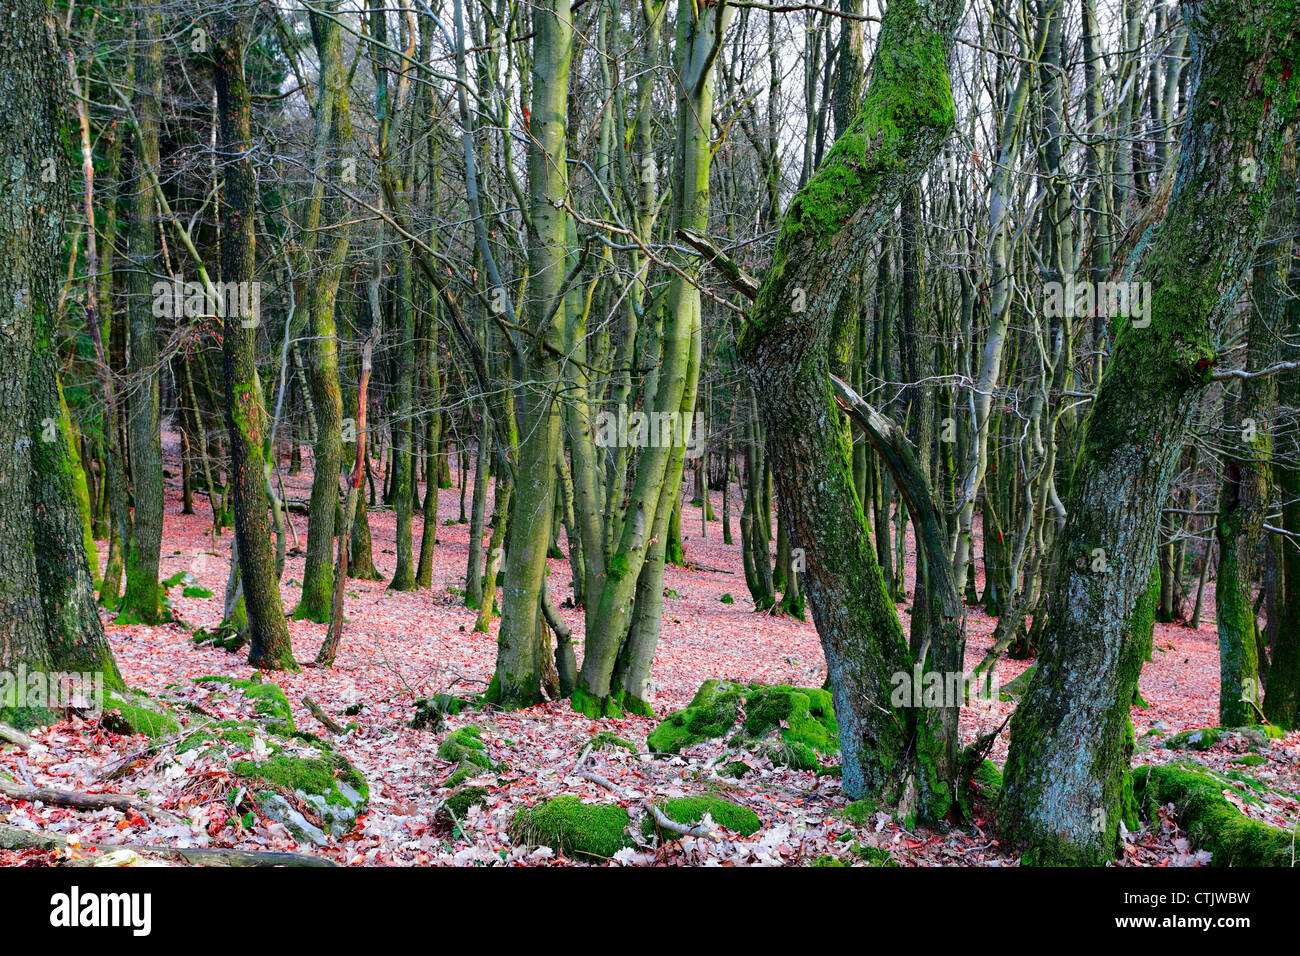 Bech densa e la foresta di querce mit molto moss in primavera, nei pressi di Prüm, Renania-Palatinato, Germania. Foto Stock